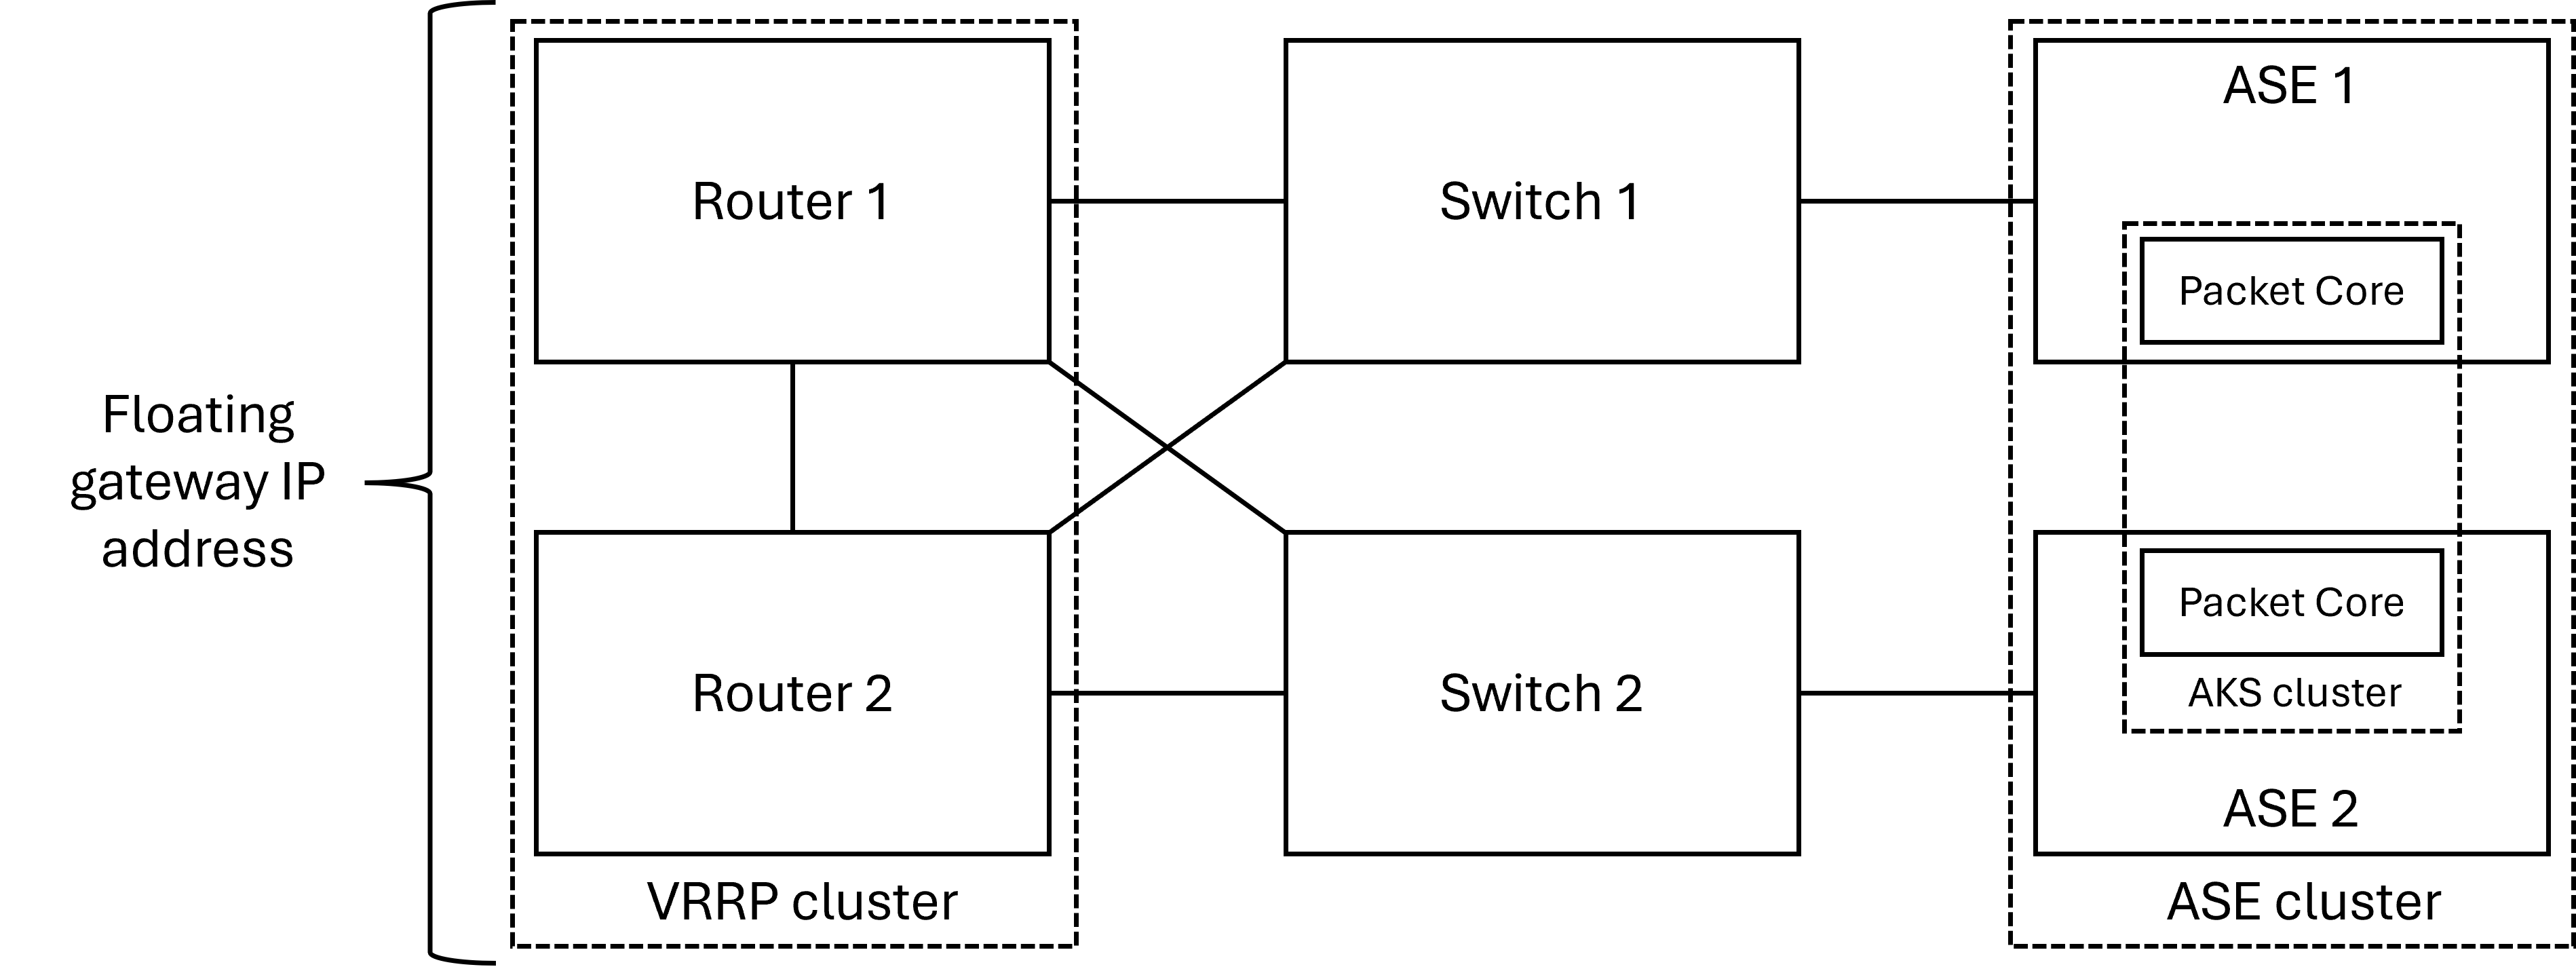 Схема физического макета сети доступа с избыточной парой маршрутизаторов.